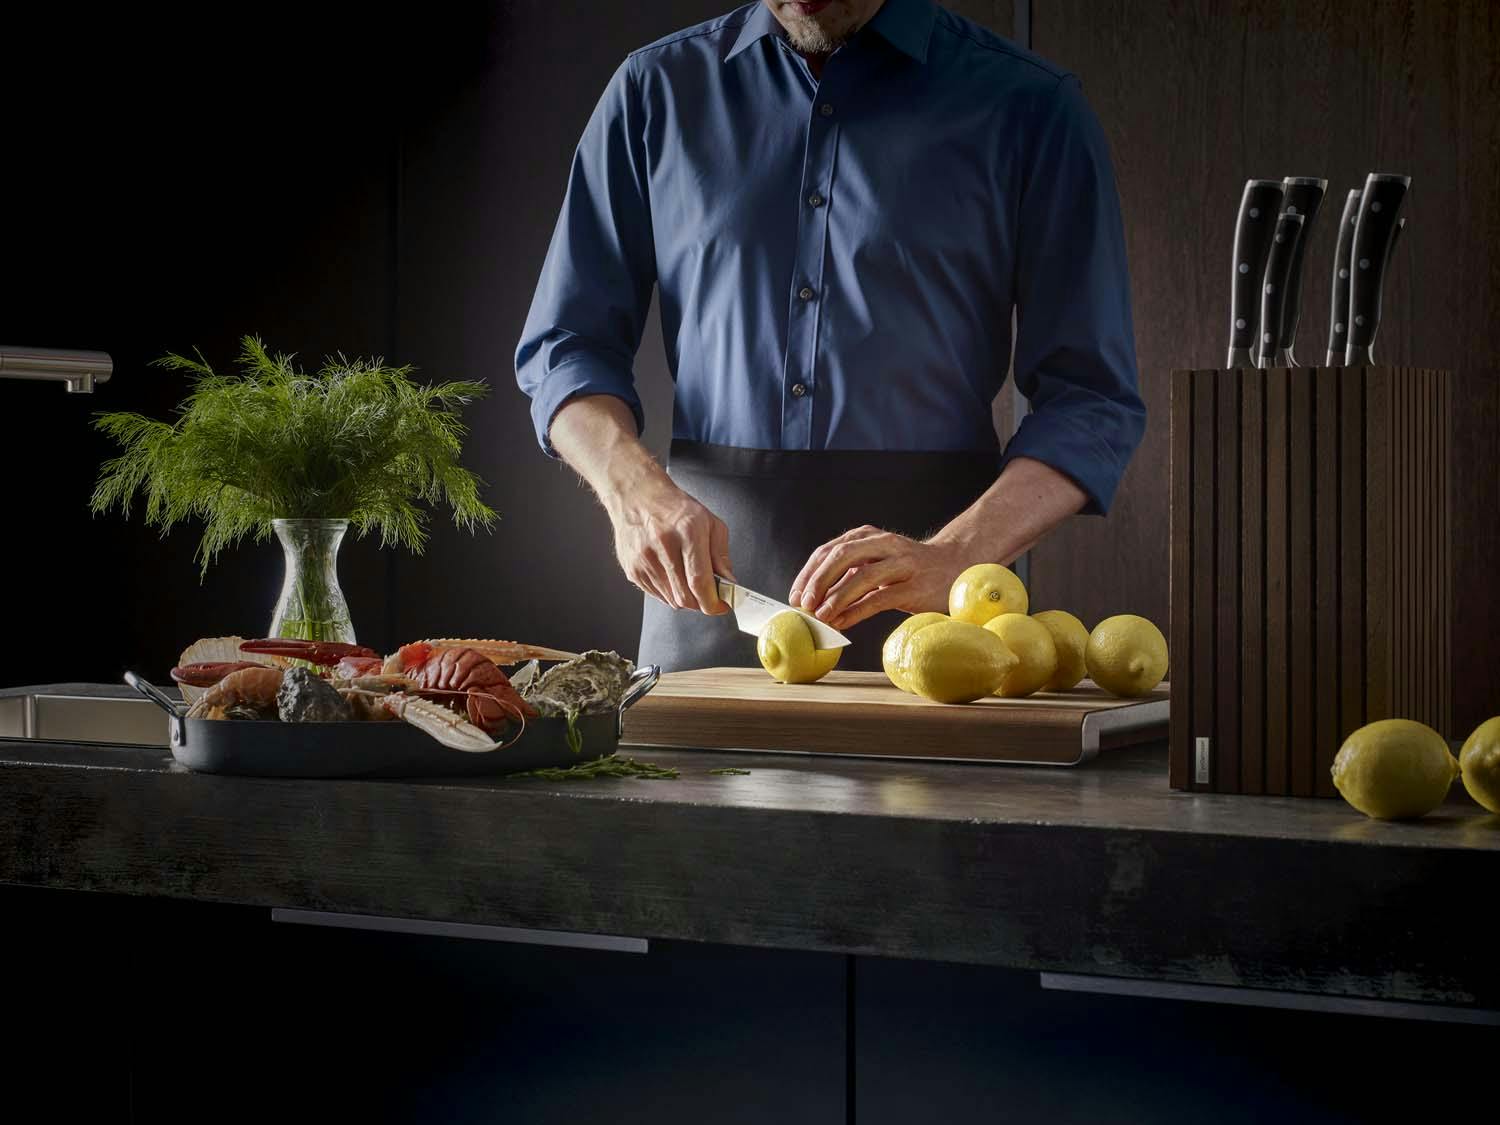 slicing lemons with an ikon chef's knife